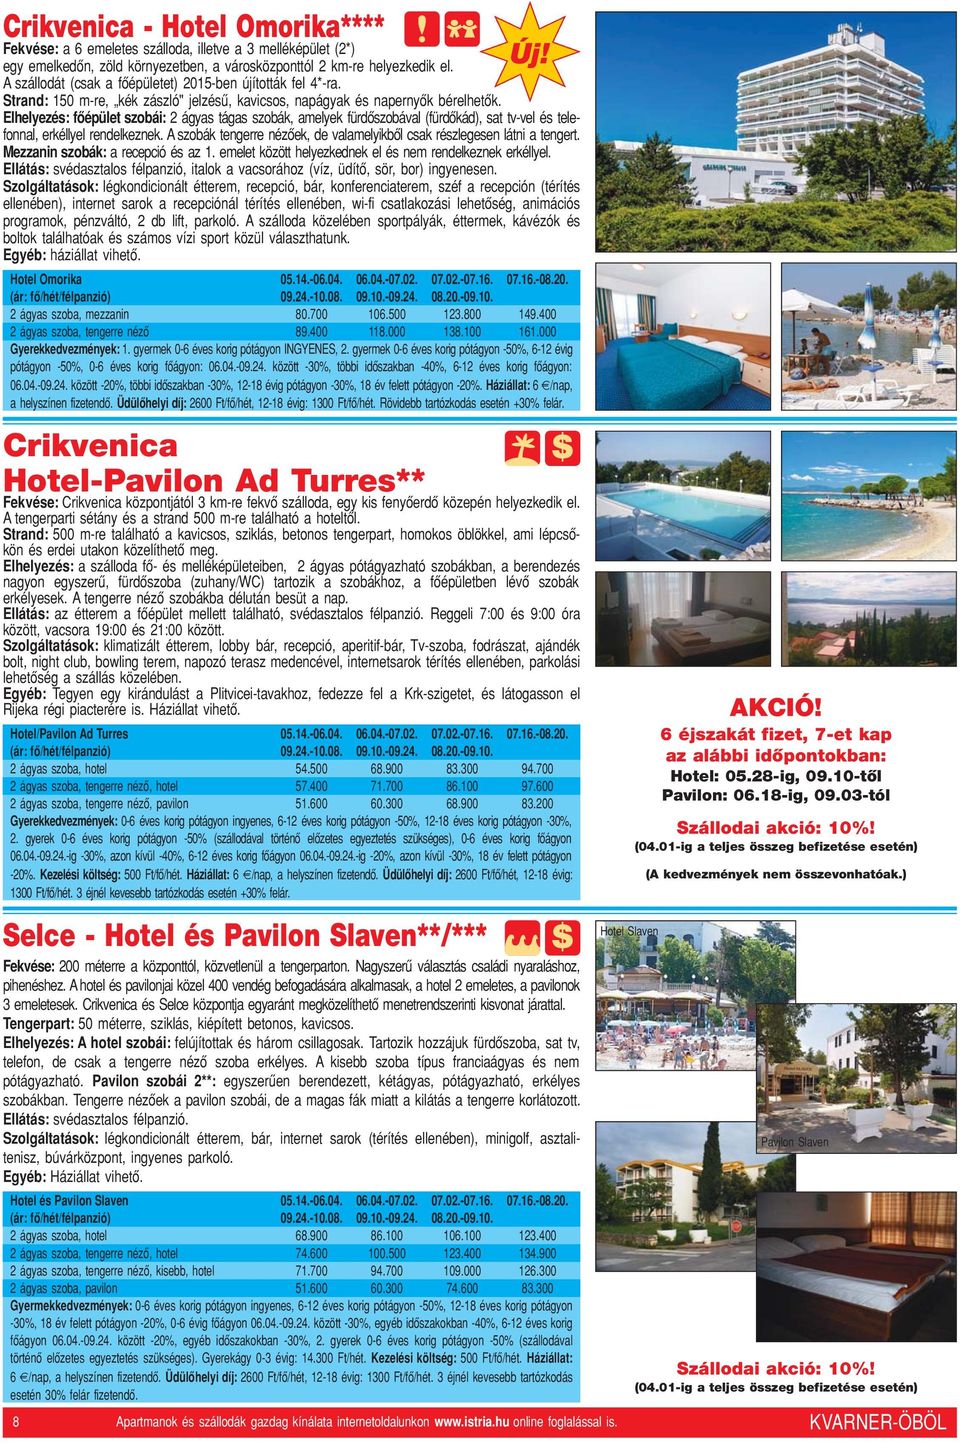 Crikvenica Hotel-Pavilon Ad Turres** Fekvése: Crikvenica központjától 3 km-re fekvô szálloda, egy kis fenyôerdô közepén helyezkedik el. A tengerparti sétány és a strand 500 m-re található a hoteltôl.